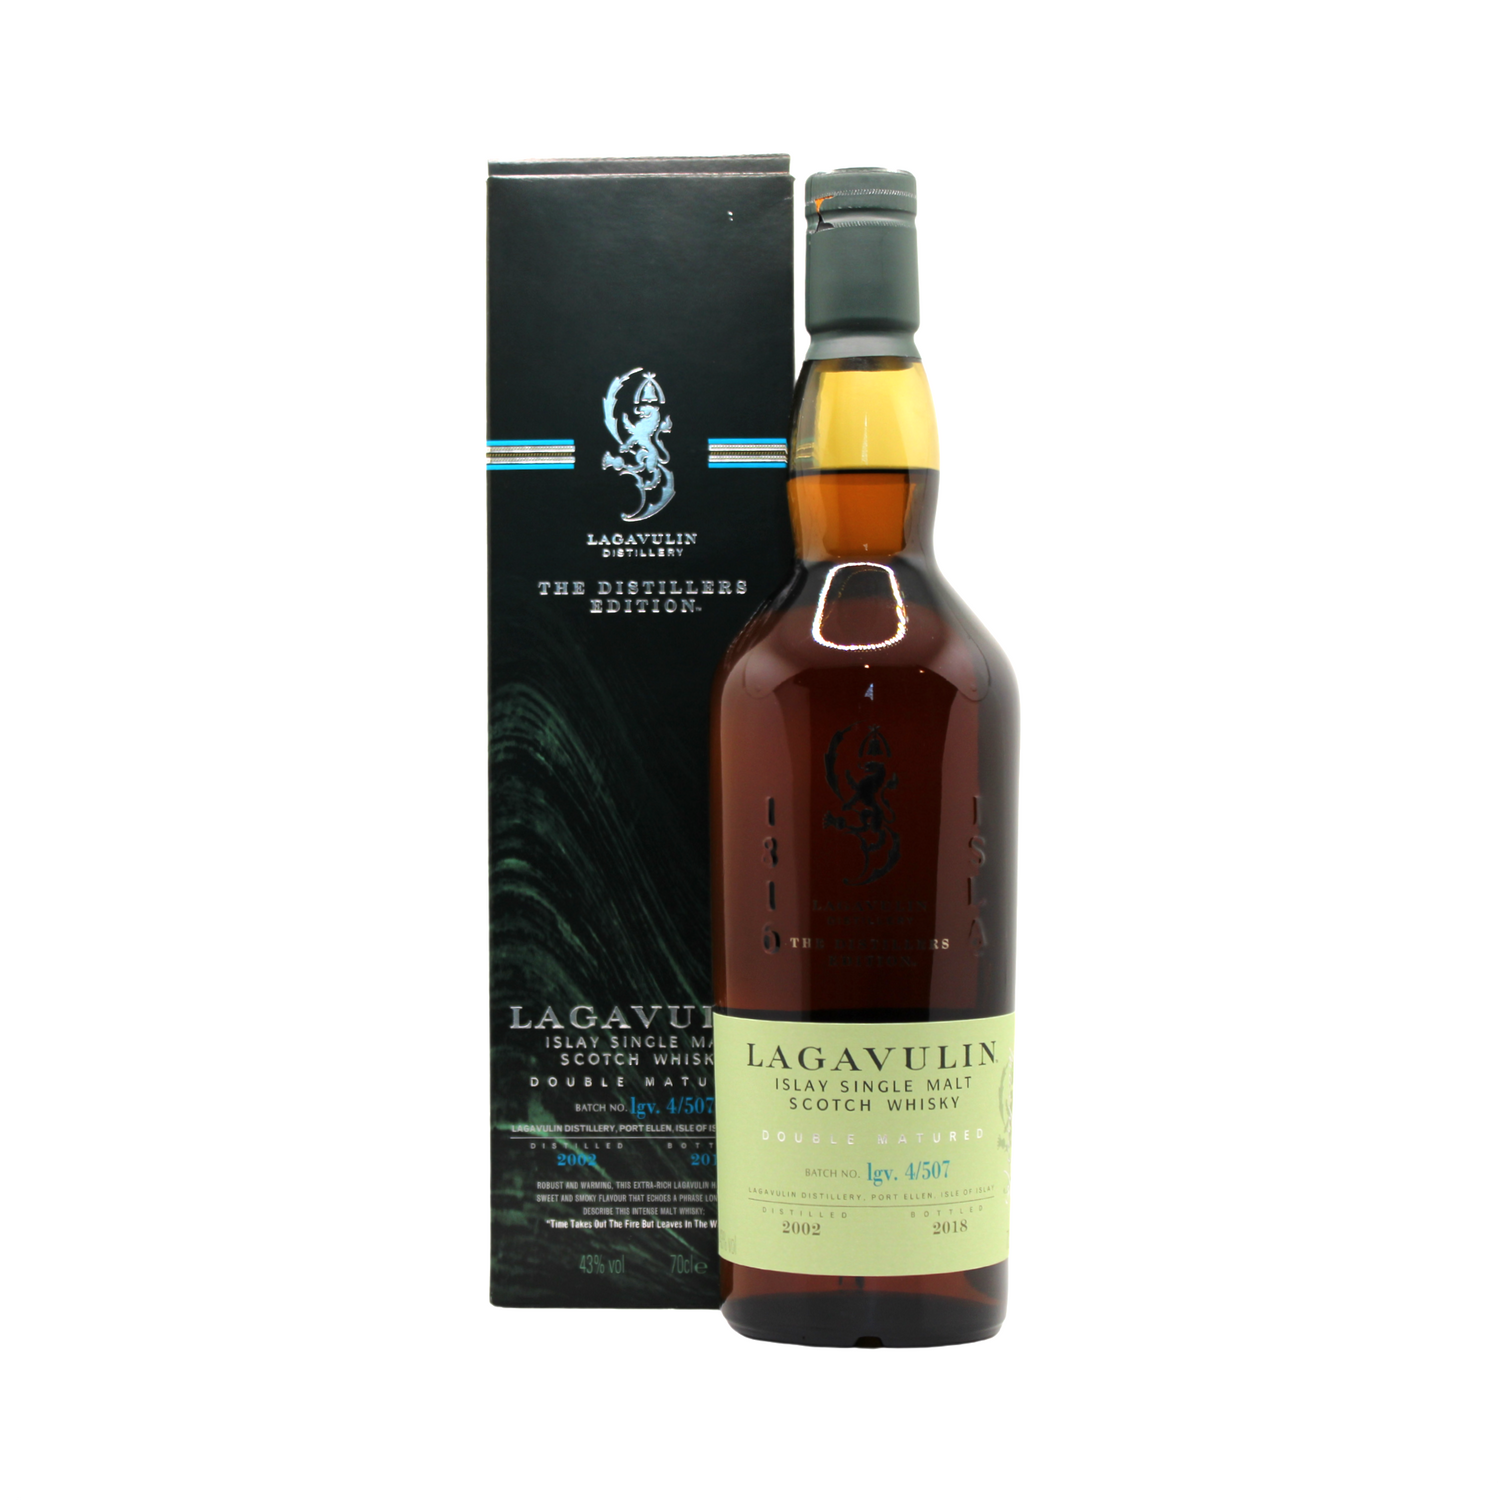 Lagavulin 2002 Distiller's Edition Single Malt Islay Scotch Whisky